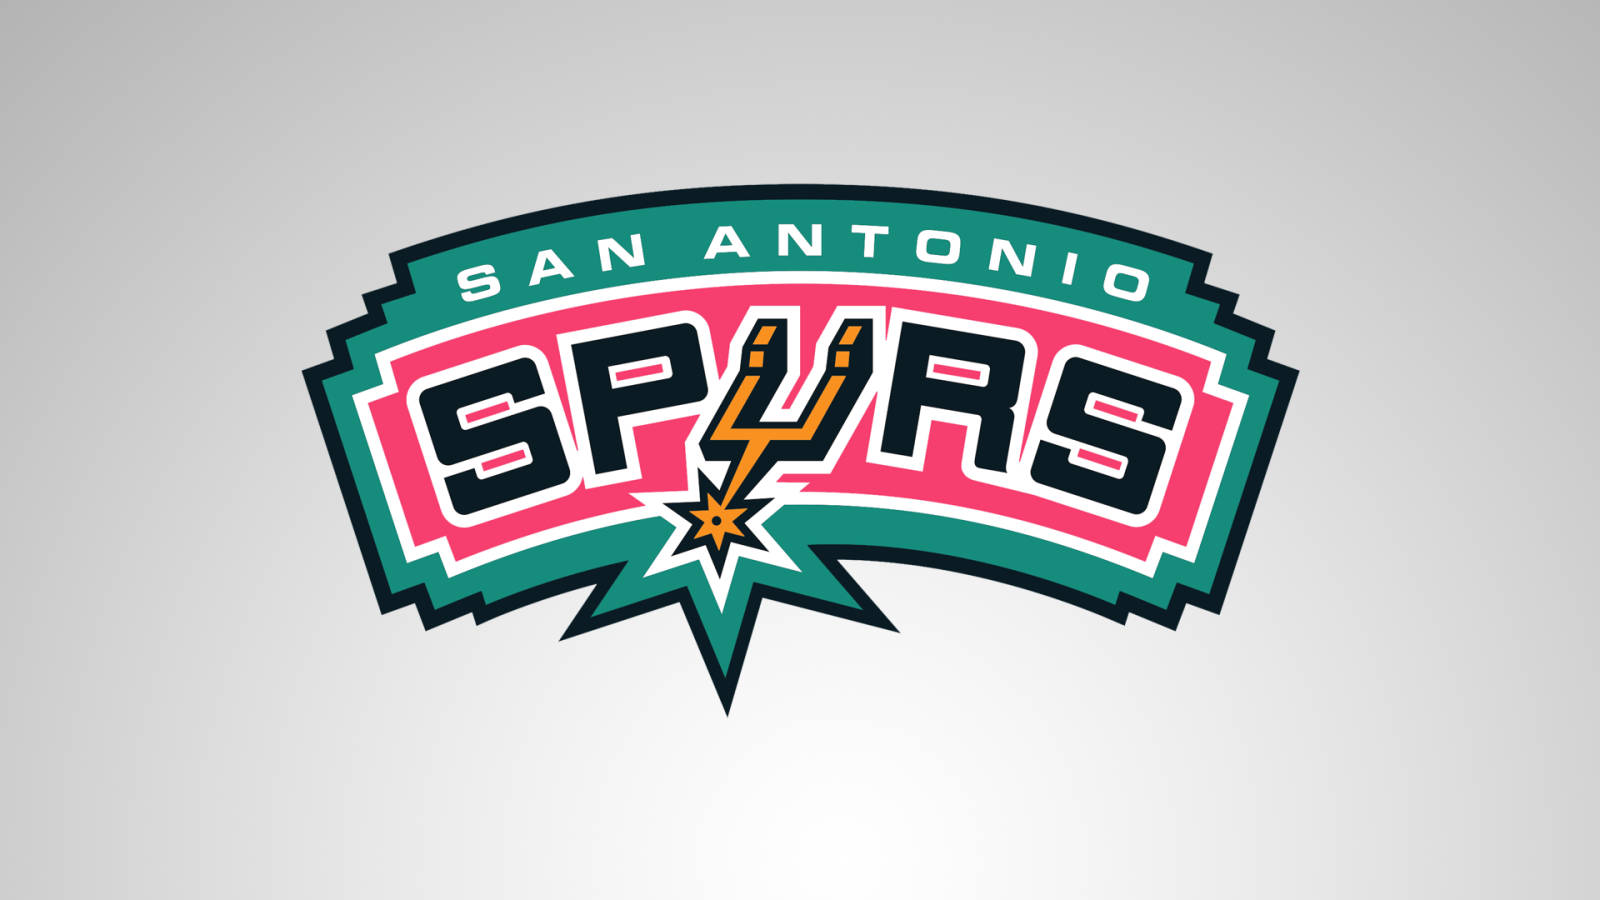 Logotipominimalista En Gris De Los San Antonio Spurs Fondo de pantalla